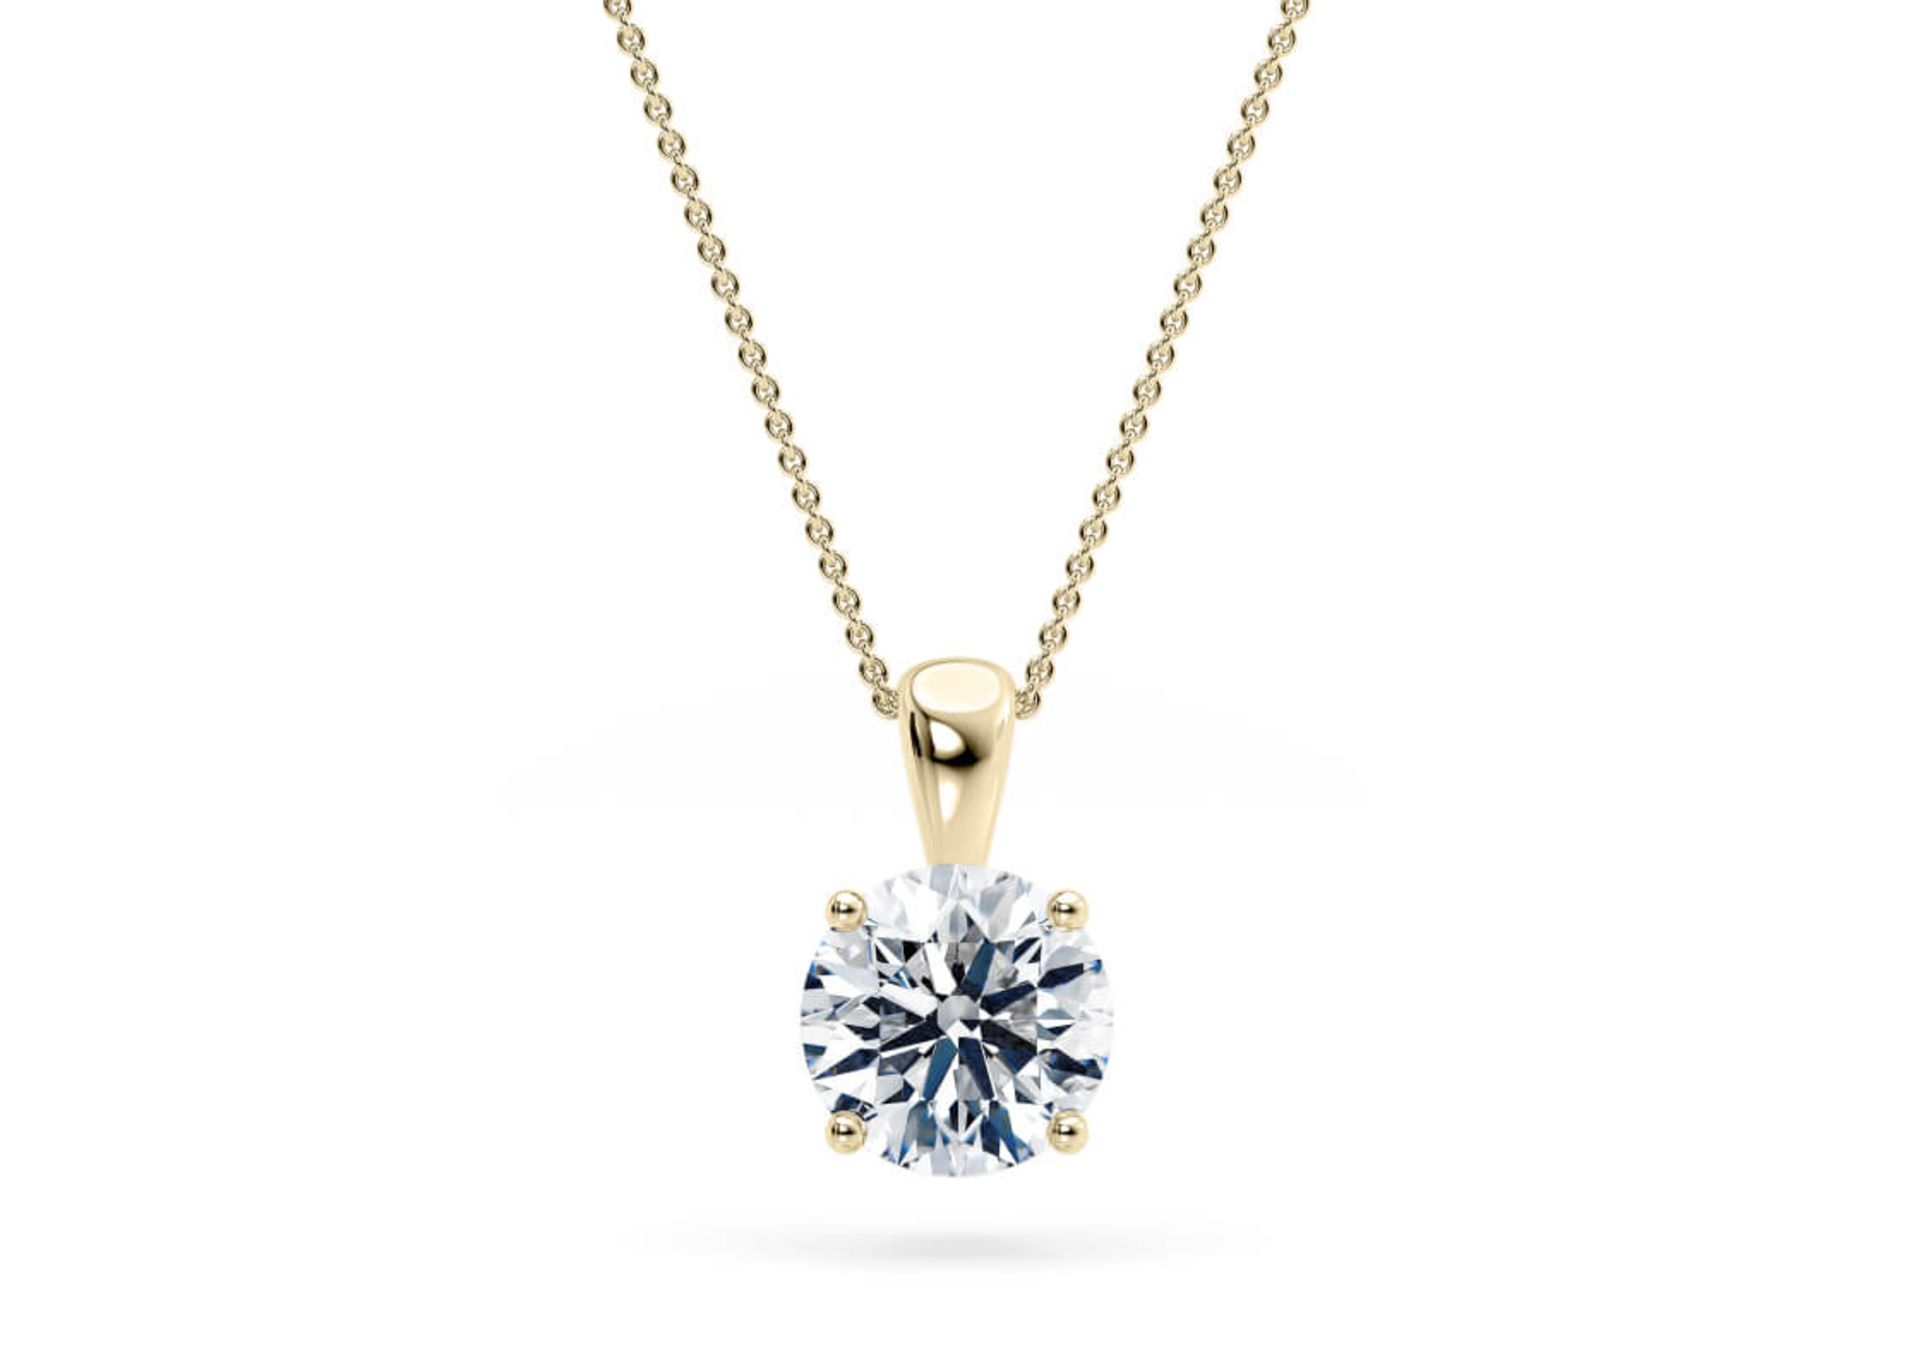 ** ON SALE ** Round Brilliant Cut Diamond 1.00 Carat D Colour VVS1 Clarity -Necklace Pendant-18kt